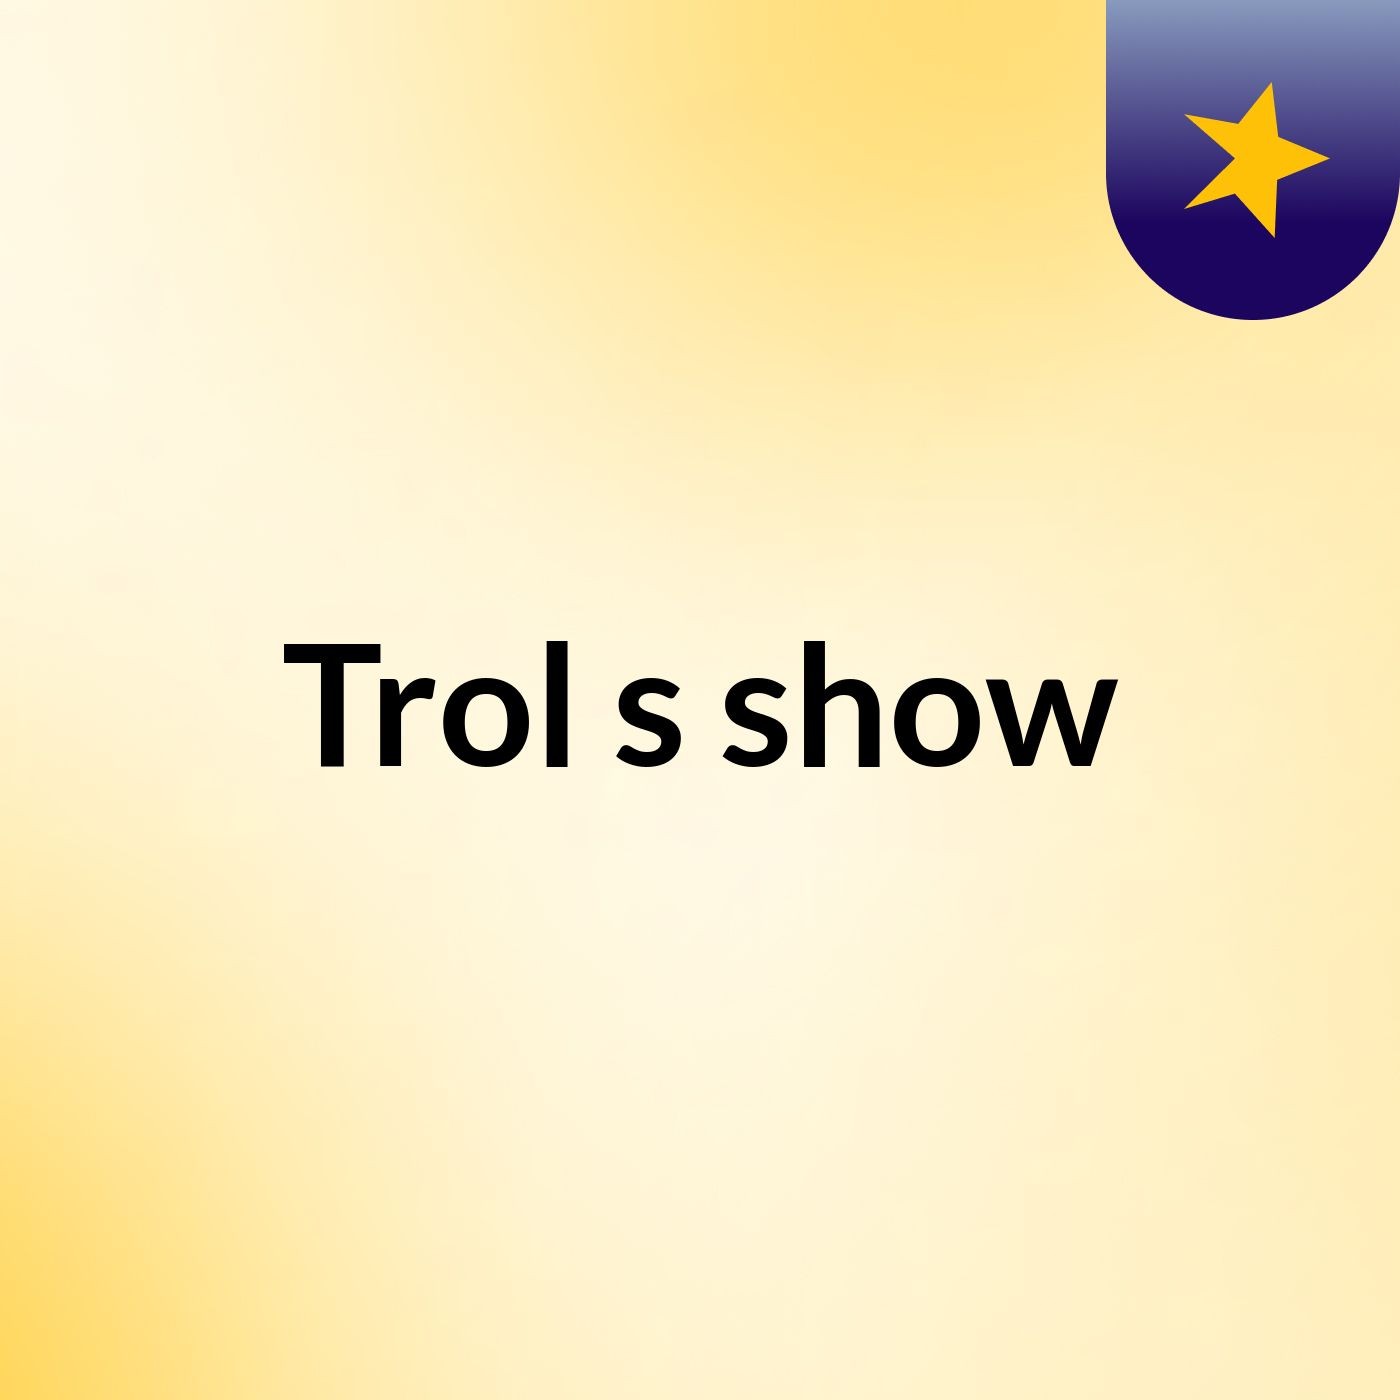 Trol's show